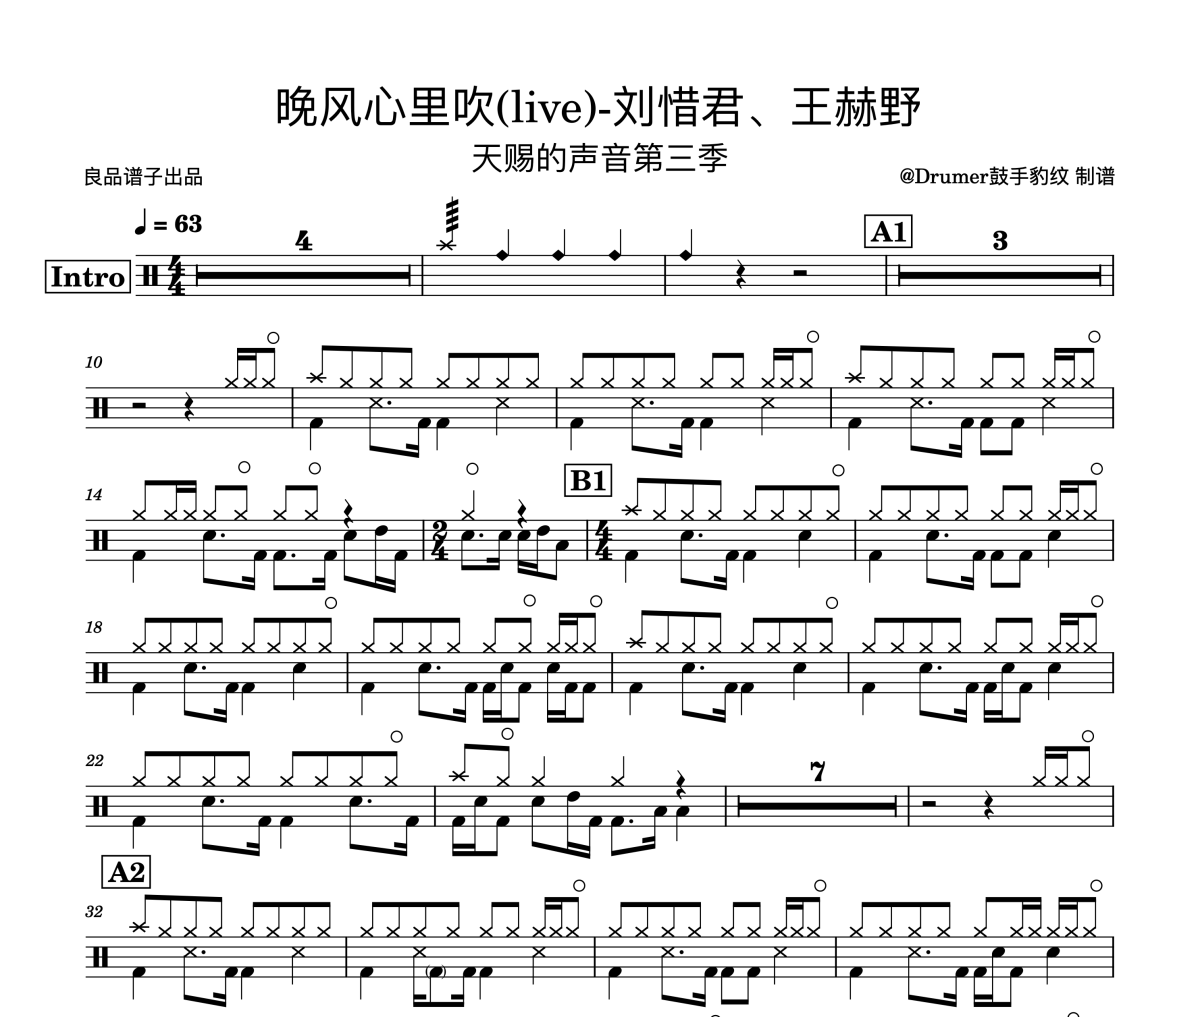 刘惜君/王赫野 晚风心里吹(live)-天赐的声音完美版鼓谱